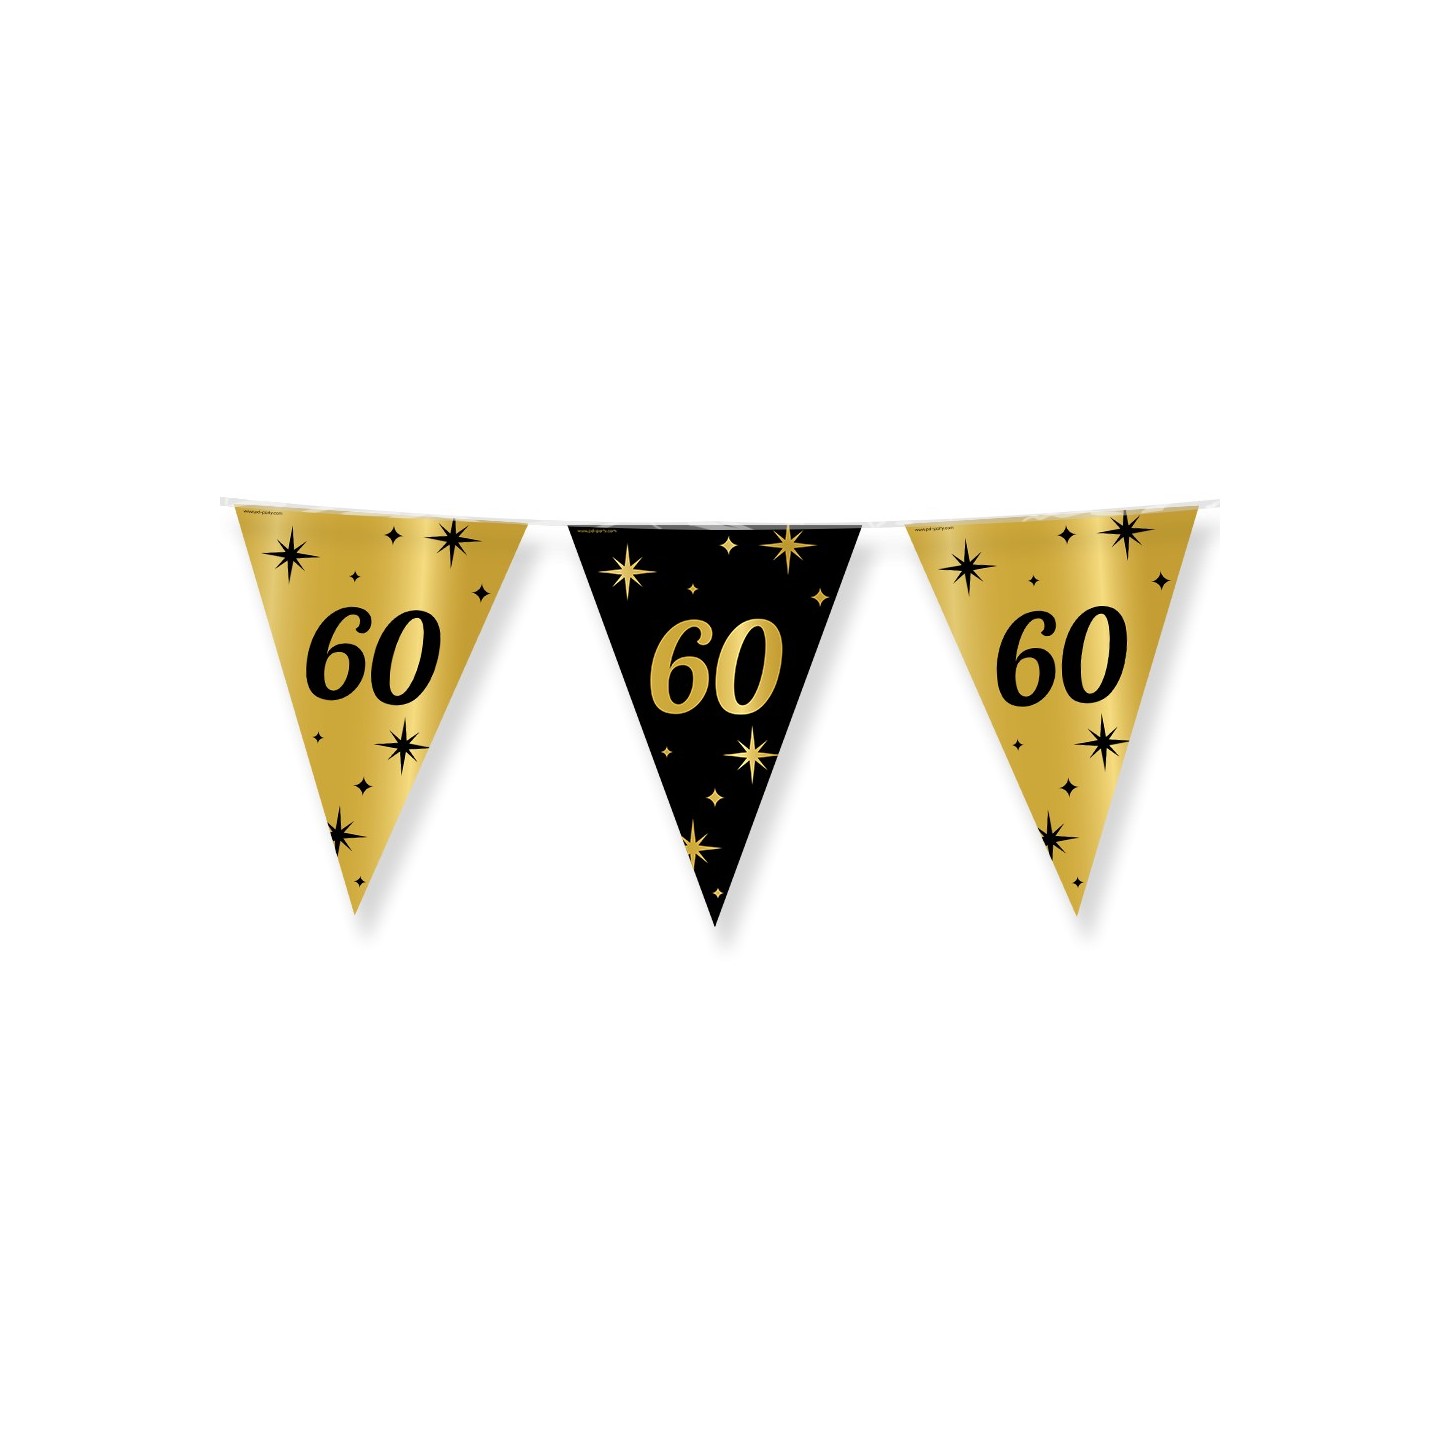 Verjaardag slinger vlaggenlijn 60 jaar decoratie versiering